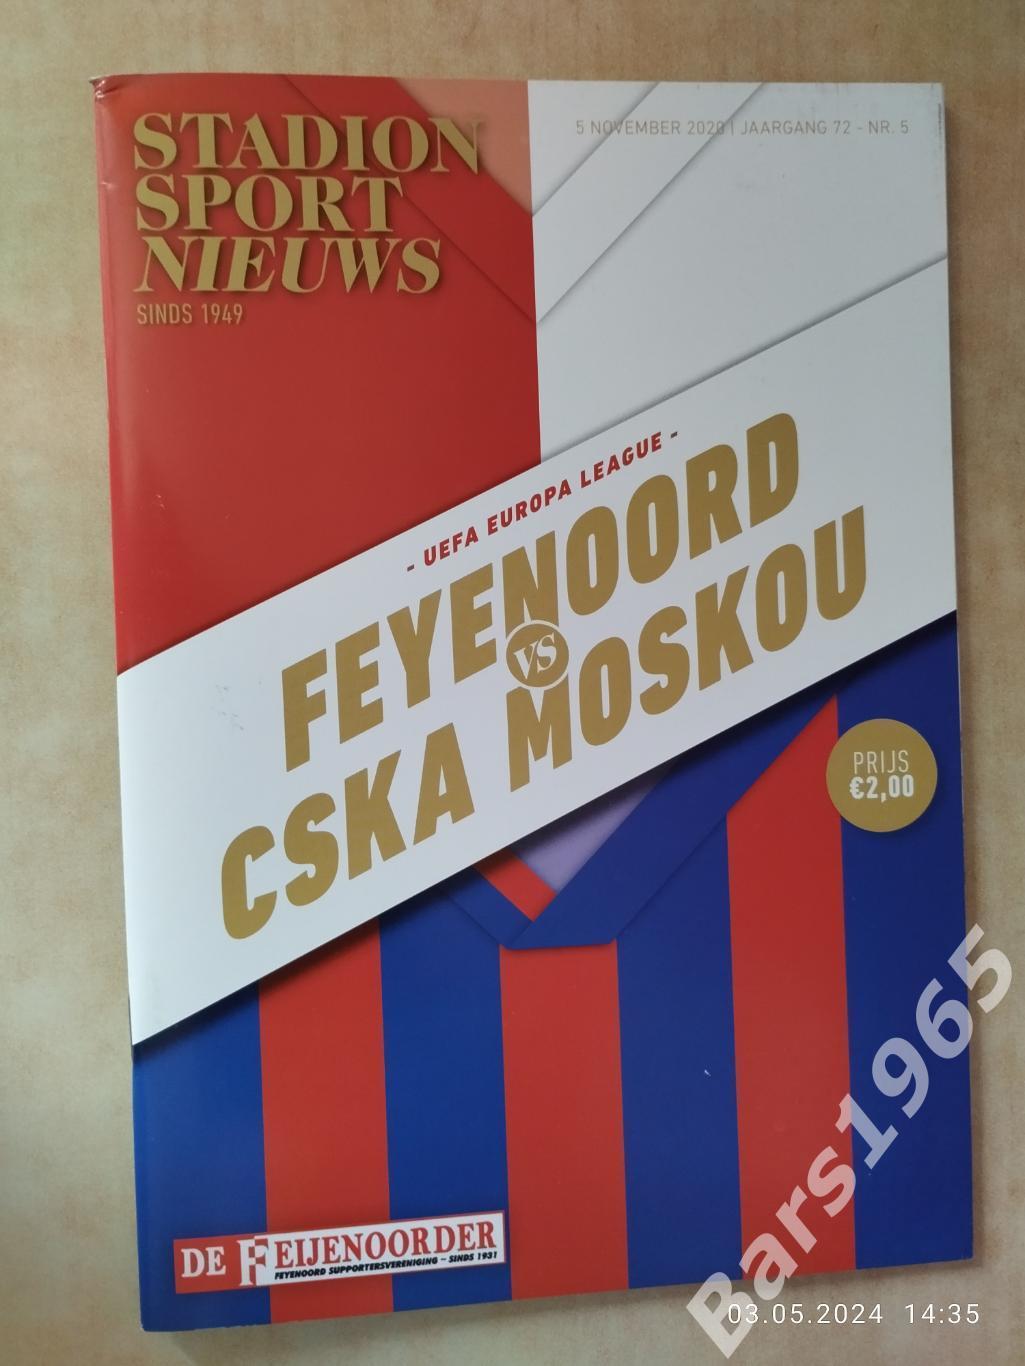 Фейеноорд Нидерланды - ЦСКА Москва 2020